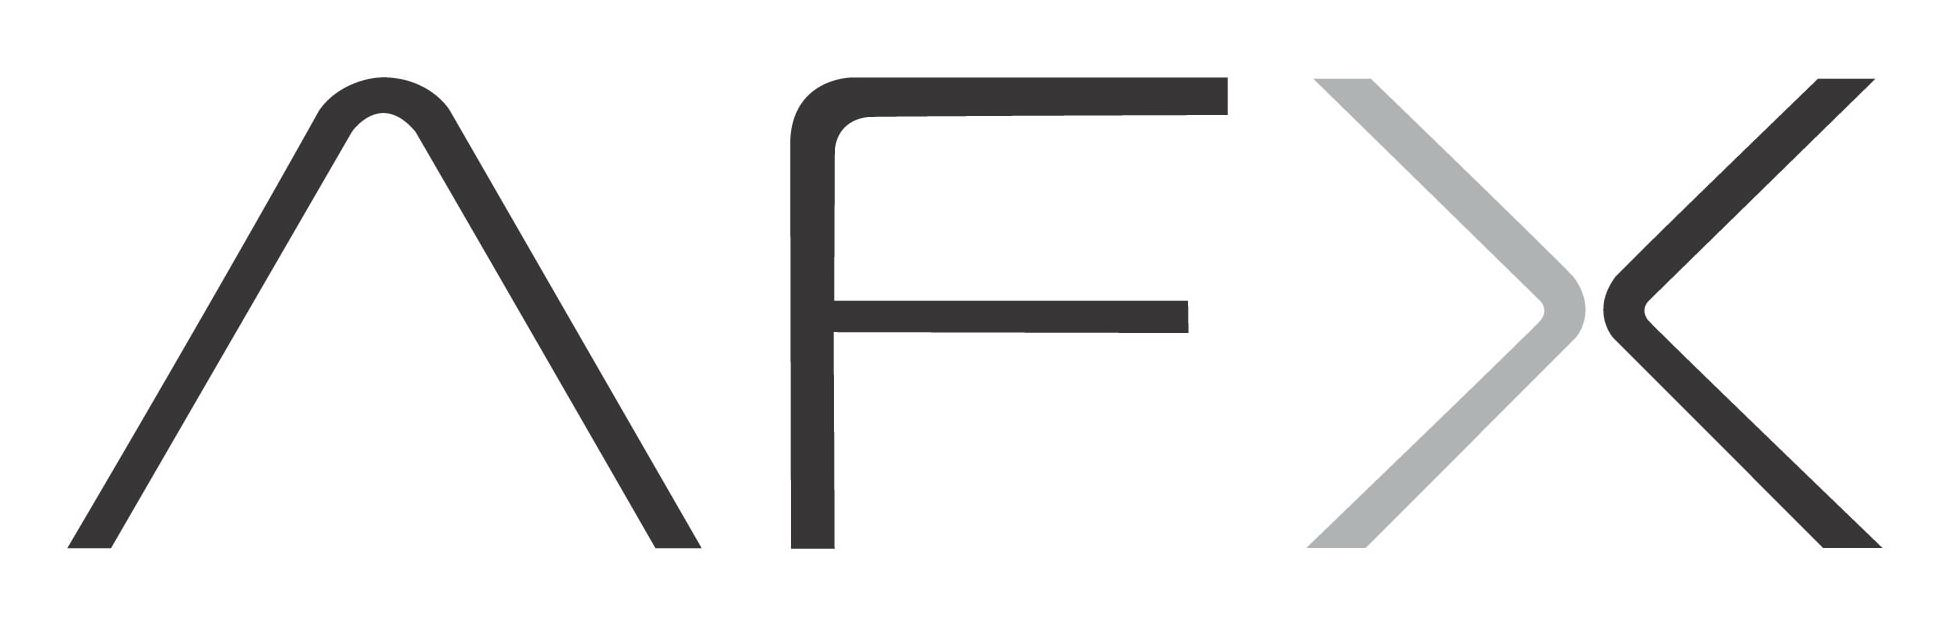 Trademark Logo AFX